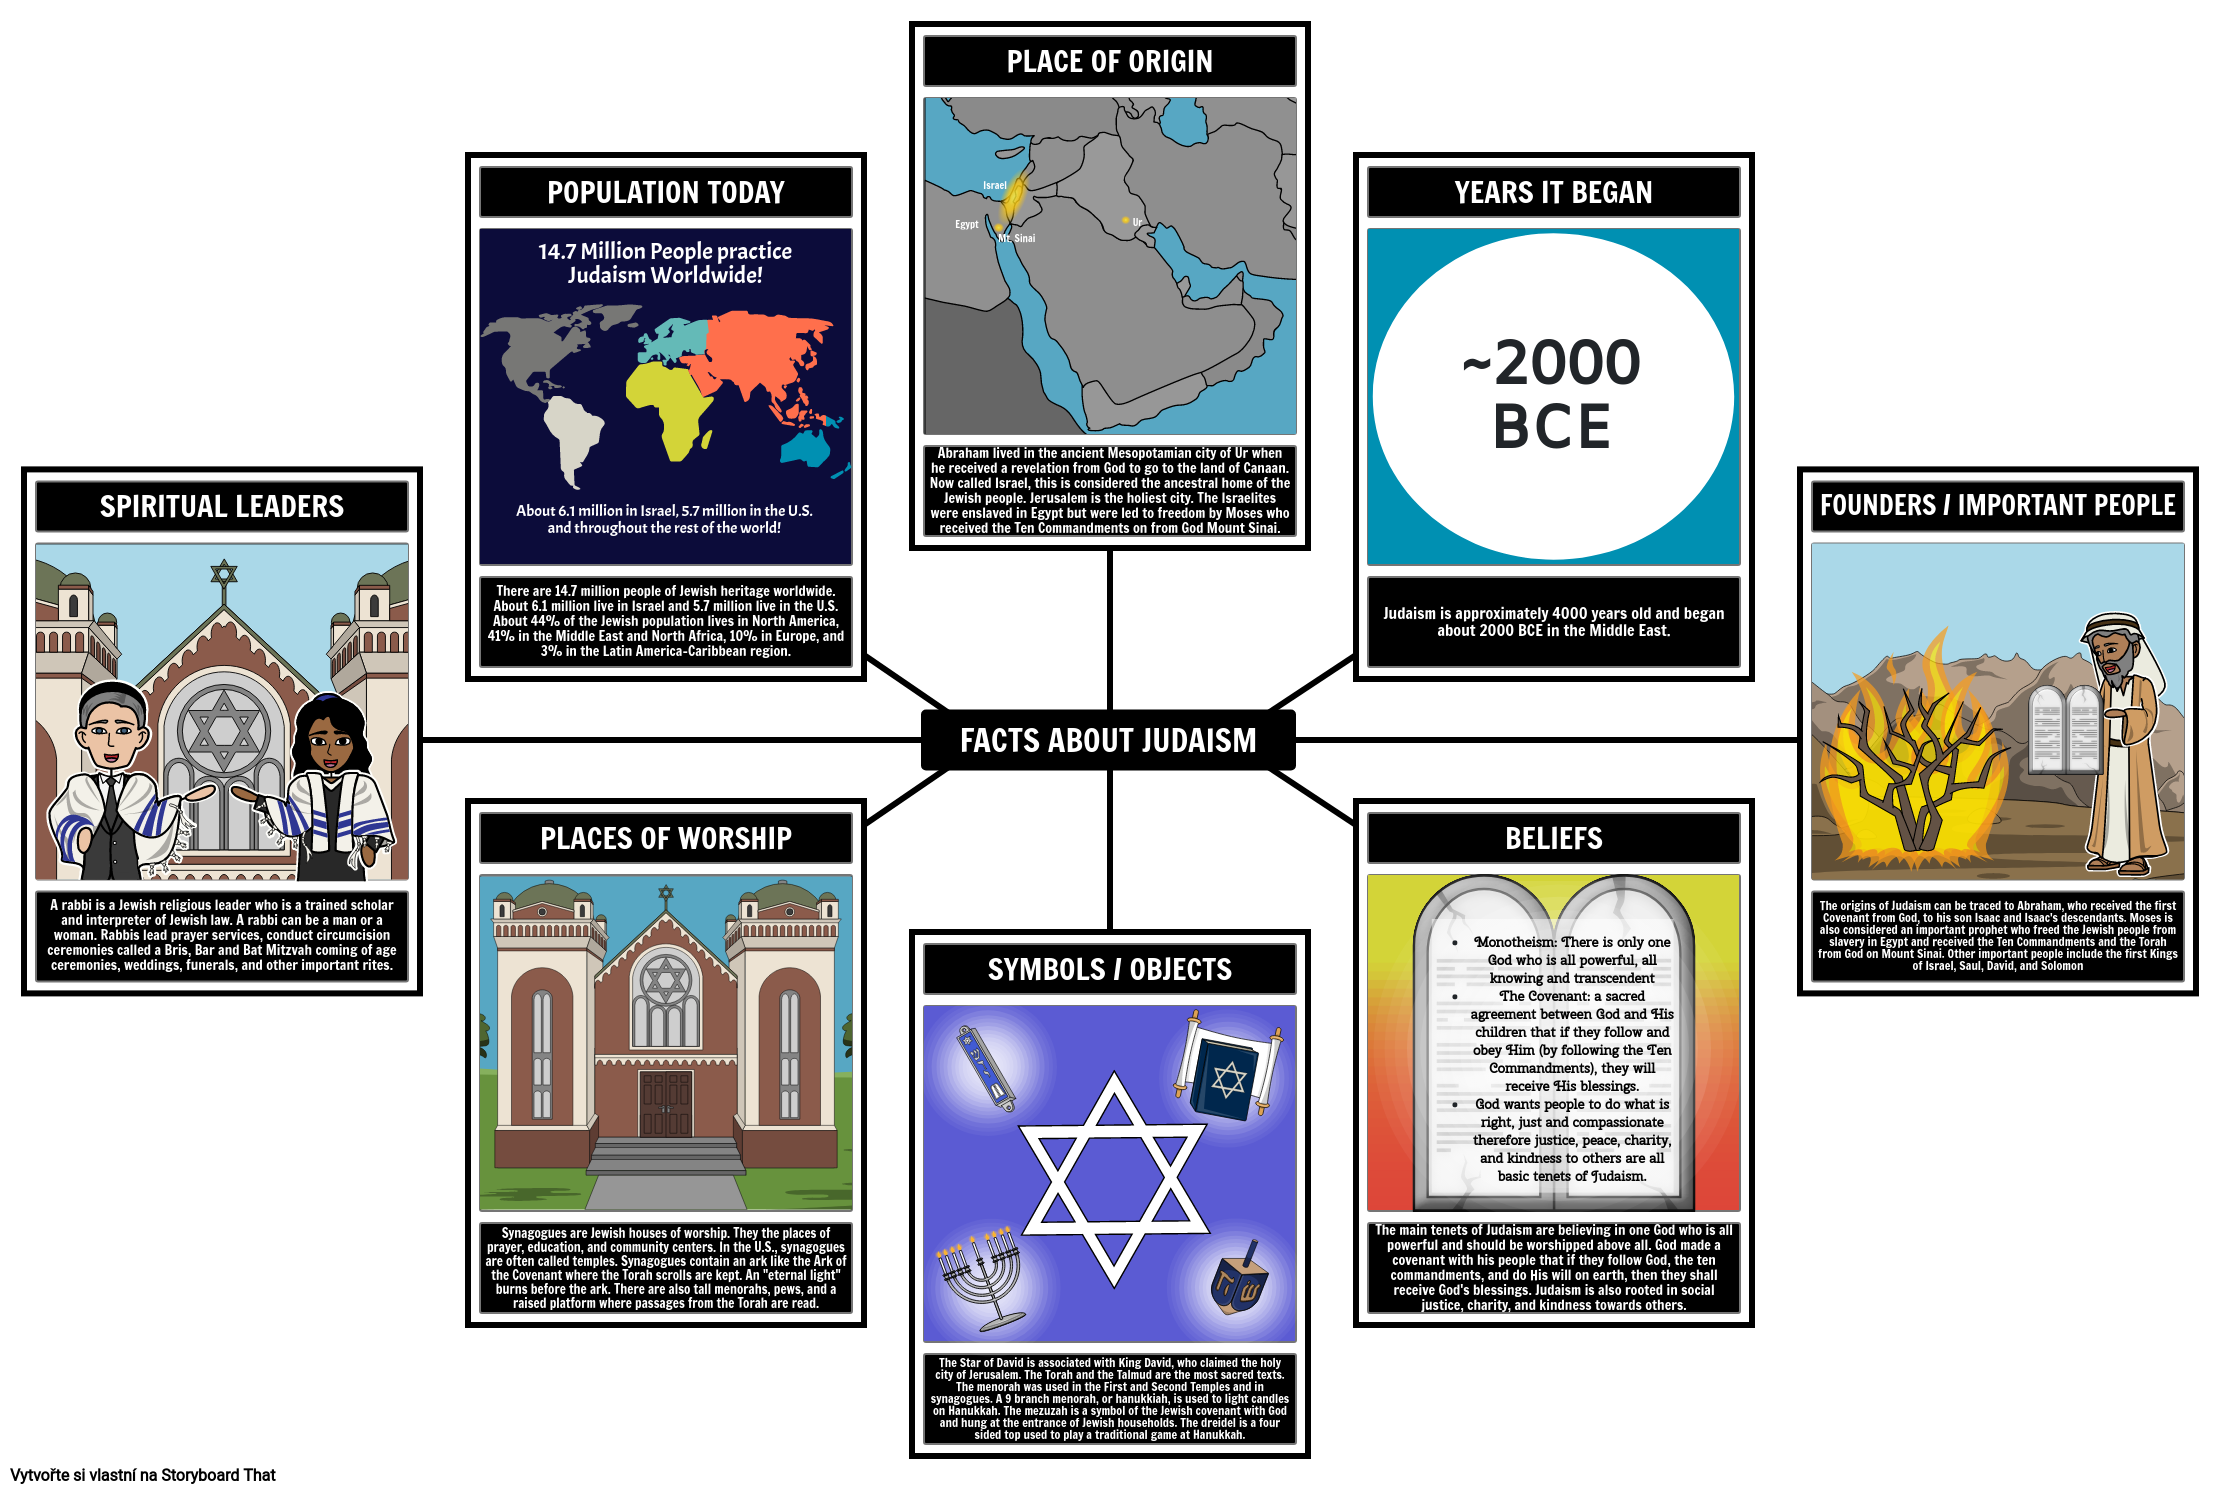 Fakta o Judaismu